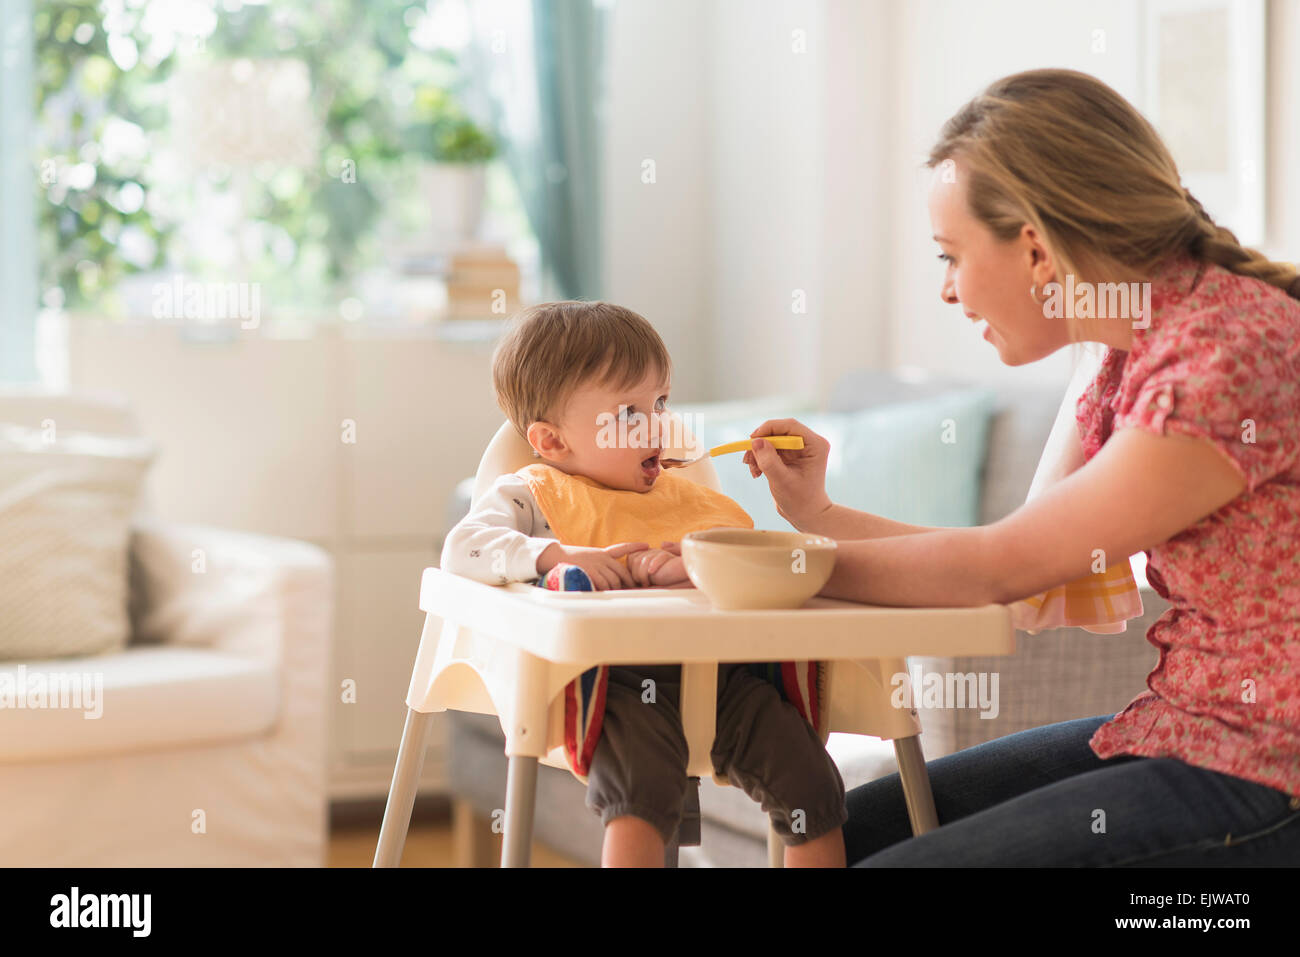 Alimentazione madre ragazzino (2-3 anni) in sedia alta Foto Stock